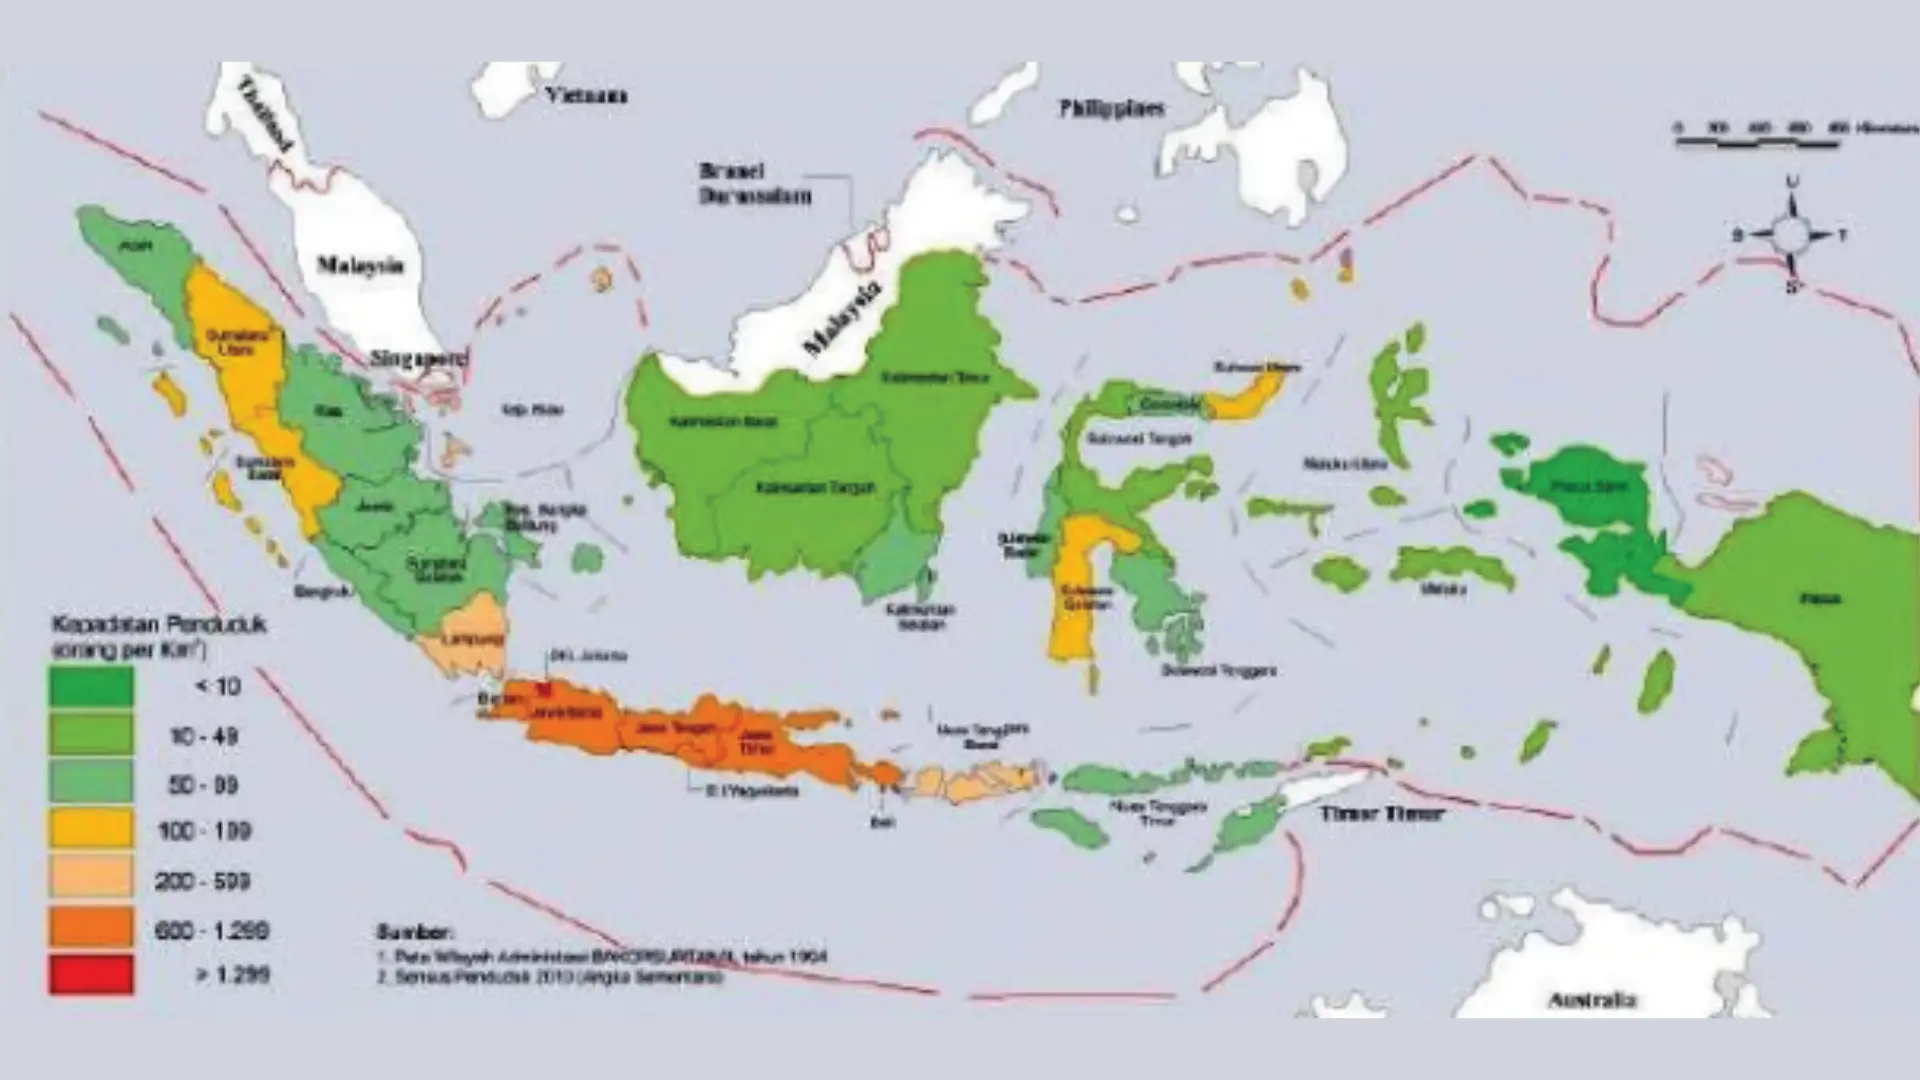 Keuntungan Dari Letak Indonesia Secara Geologis Adalah Sebagai Berikut